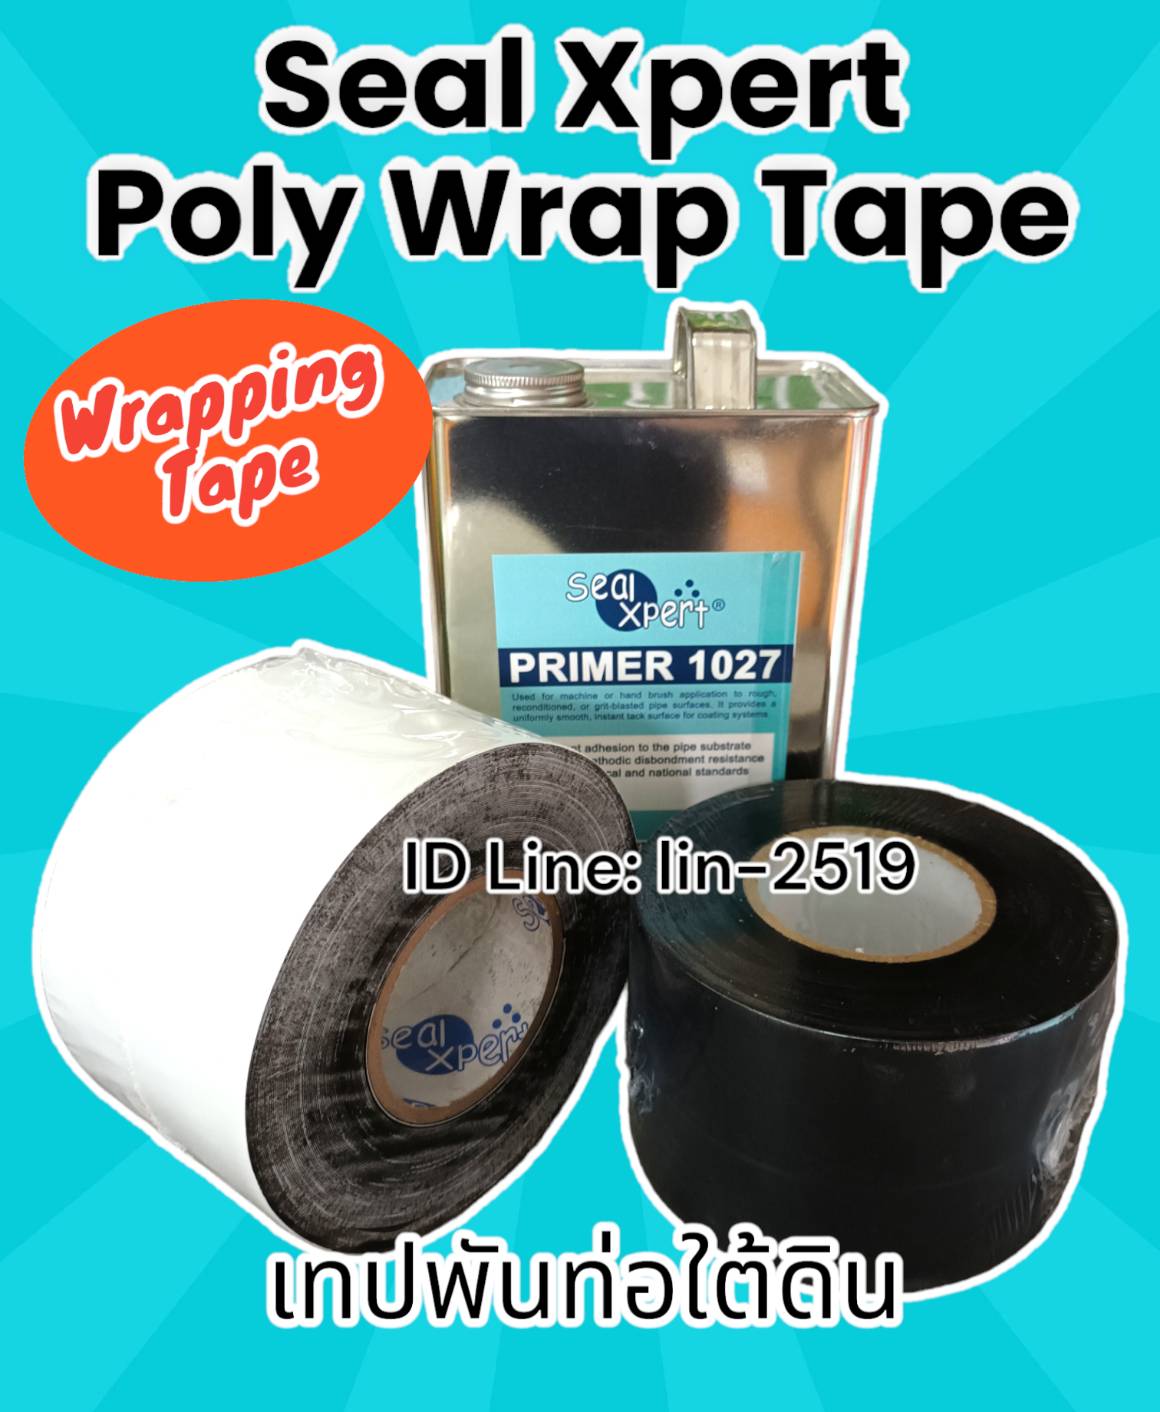 รูปภาพ ​Seal Xpert Poly Wrap Tape เทปพันท่อใต้ดินใช้พันท่อก่อนฝังดิน นำเข้าจากสิงคโปร์ เทปพีอีพันท่อเพื่อป้องกันสนิม การกัดกร่อน และแรงกระแทกจากการกลบฝัง ตามมาตรฐาน AWWA C-214